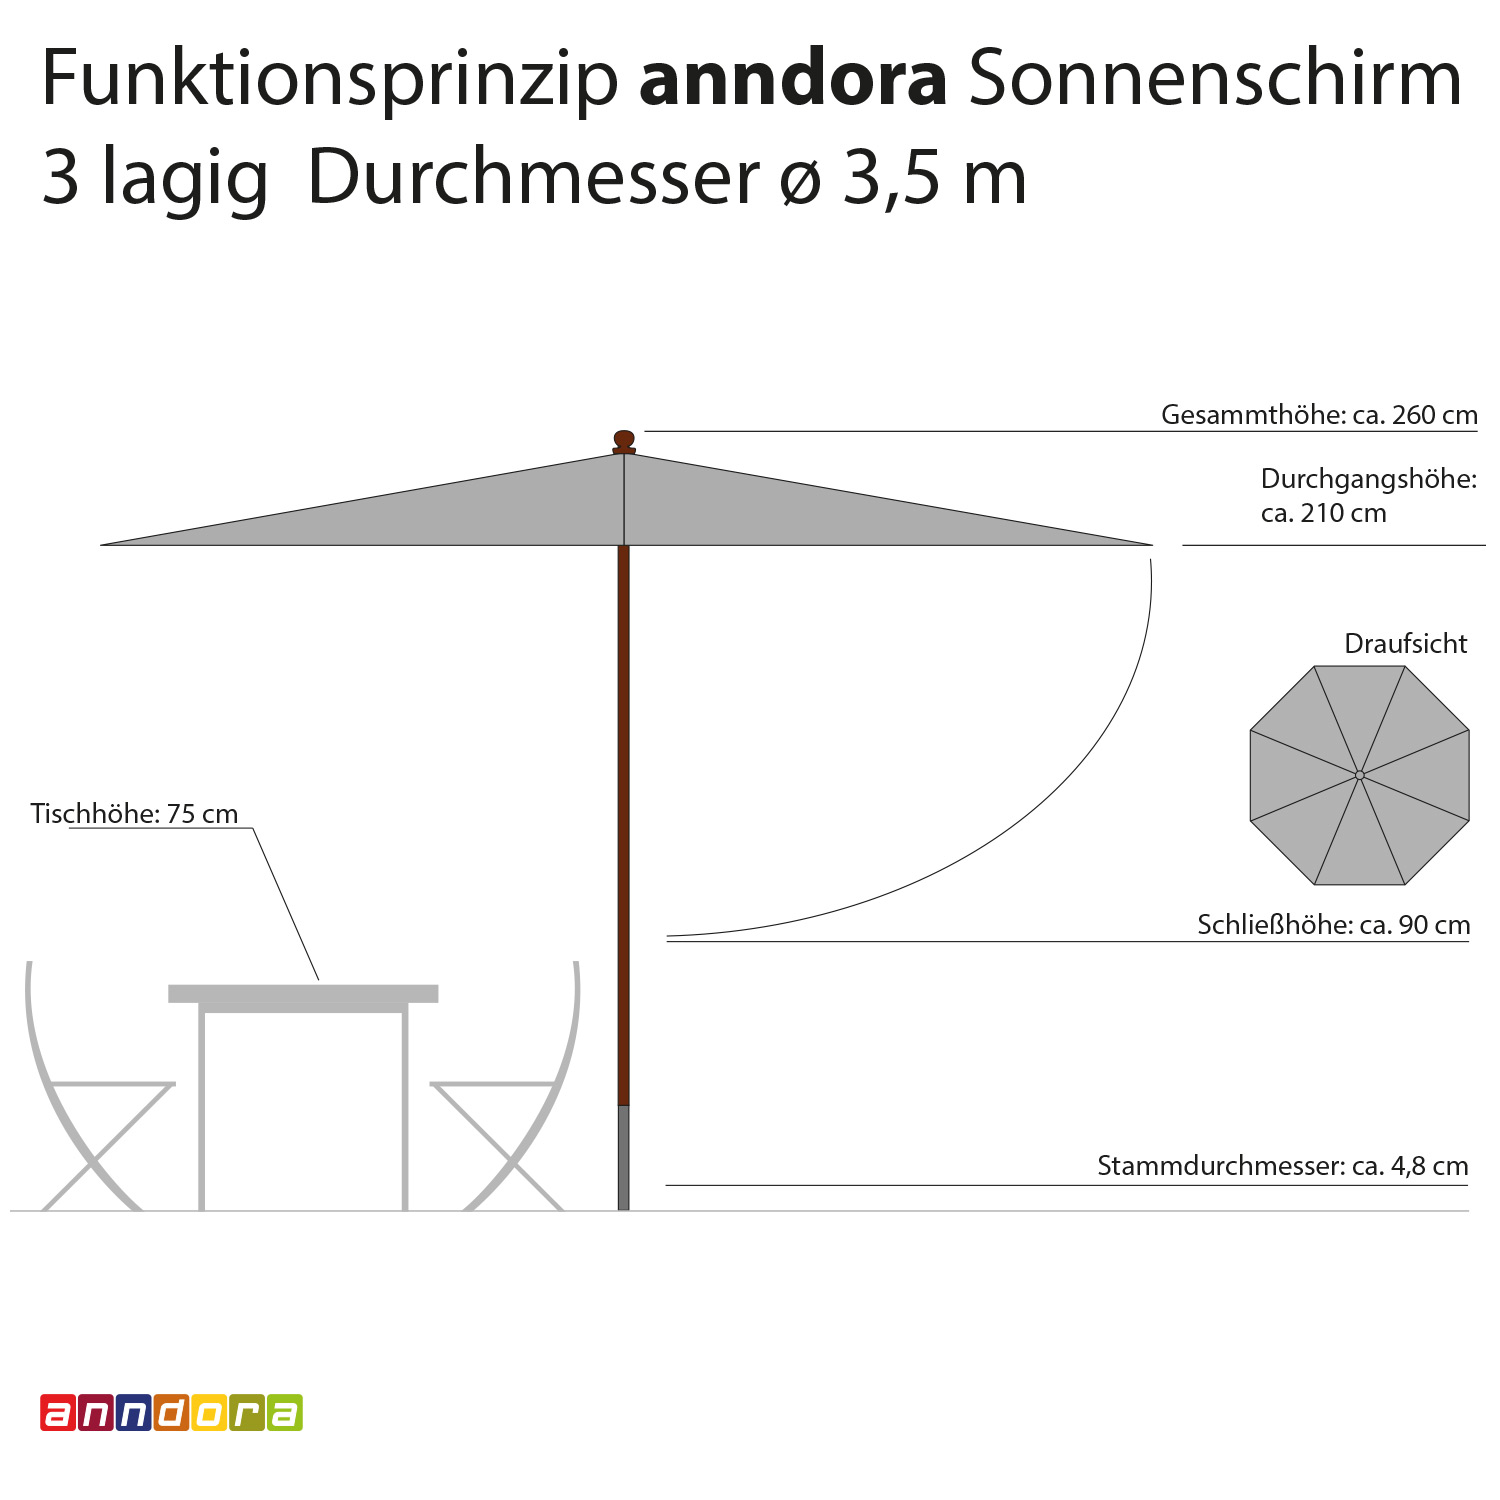 anndora Sonnenschirm 3,5m rund 3-lagig Dark Natural UV-Schutz - 3